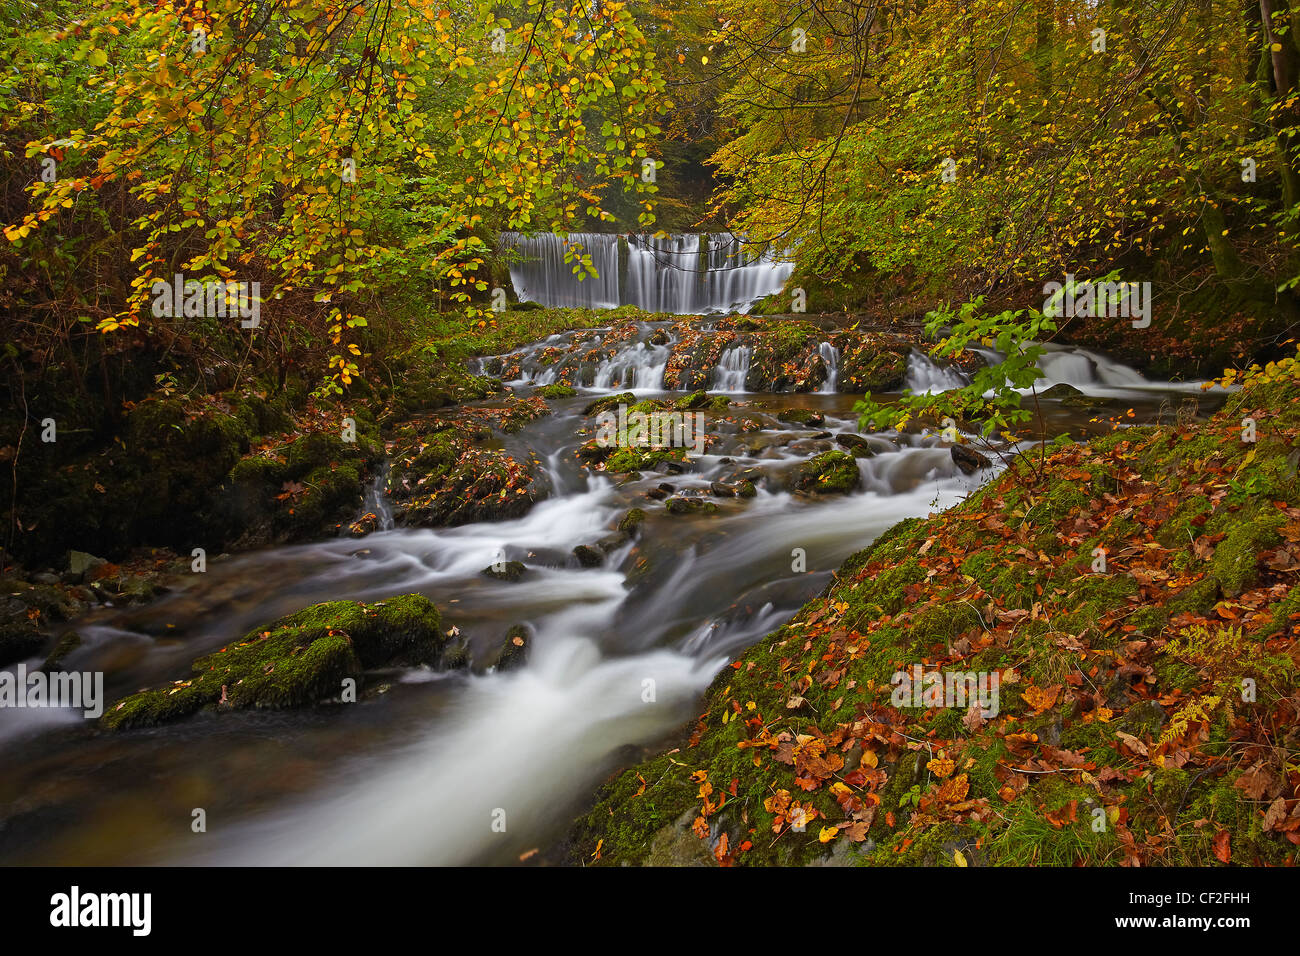 Ghyll stock circulant sur une cascade entre forêt en automne. Banque D'Images